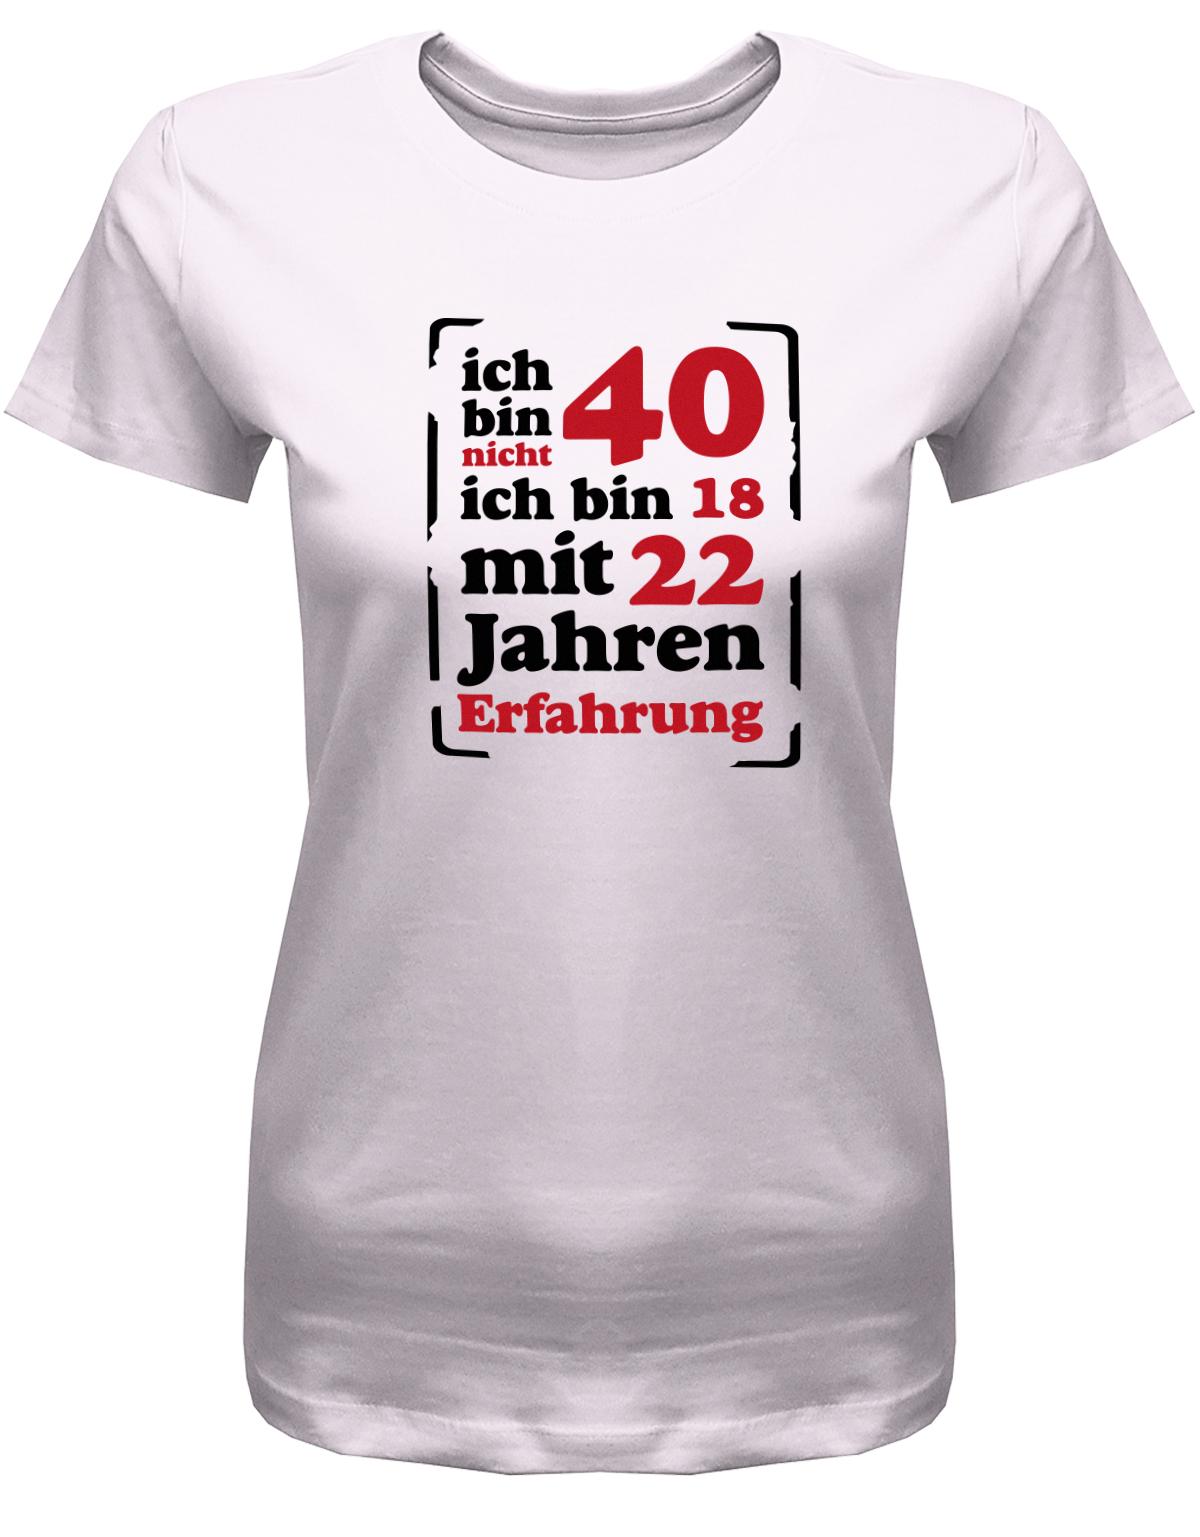 Lustiges T-Shirt zum 40. Geburtstag für die Frau Bedruckt mit Ich bin nicht 40, ich bin 18, mit 32 Jahren Erfahrung. Rosa